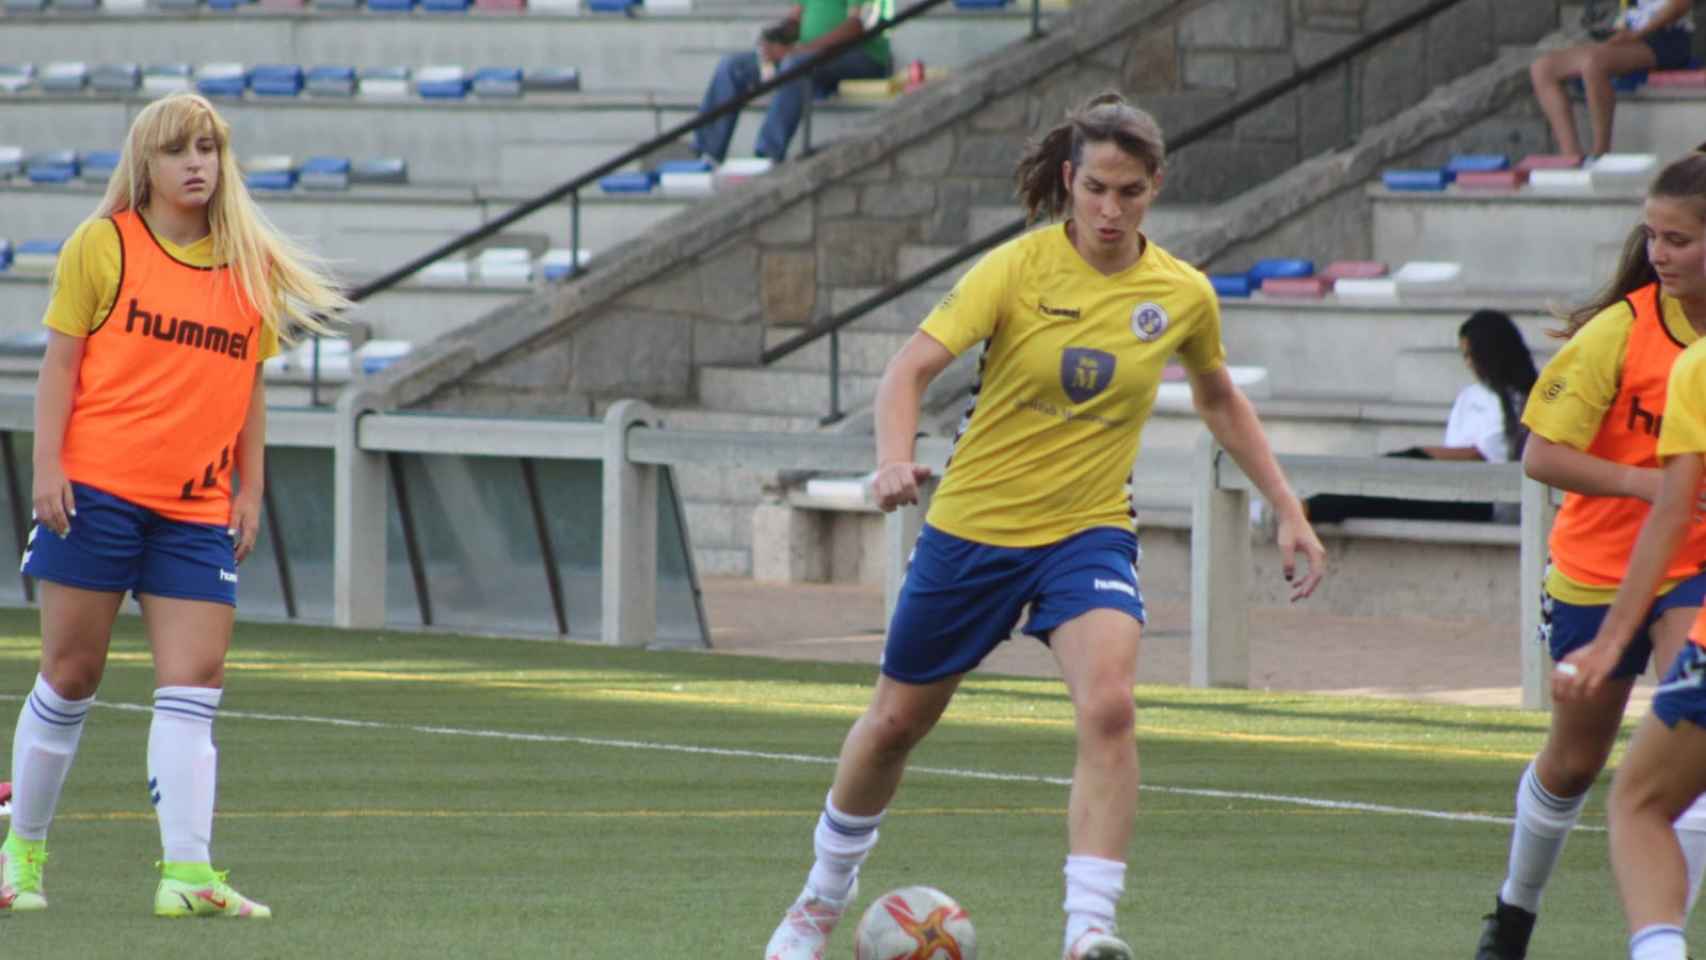 Alba Palacios, la primera jugadora de fútbol federada trans de España, en un entrenamiento